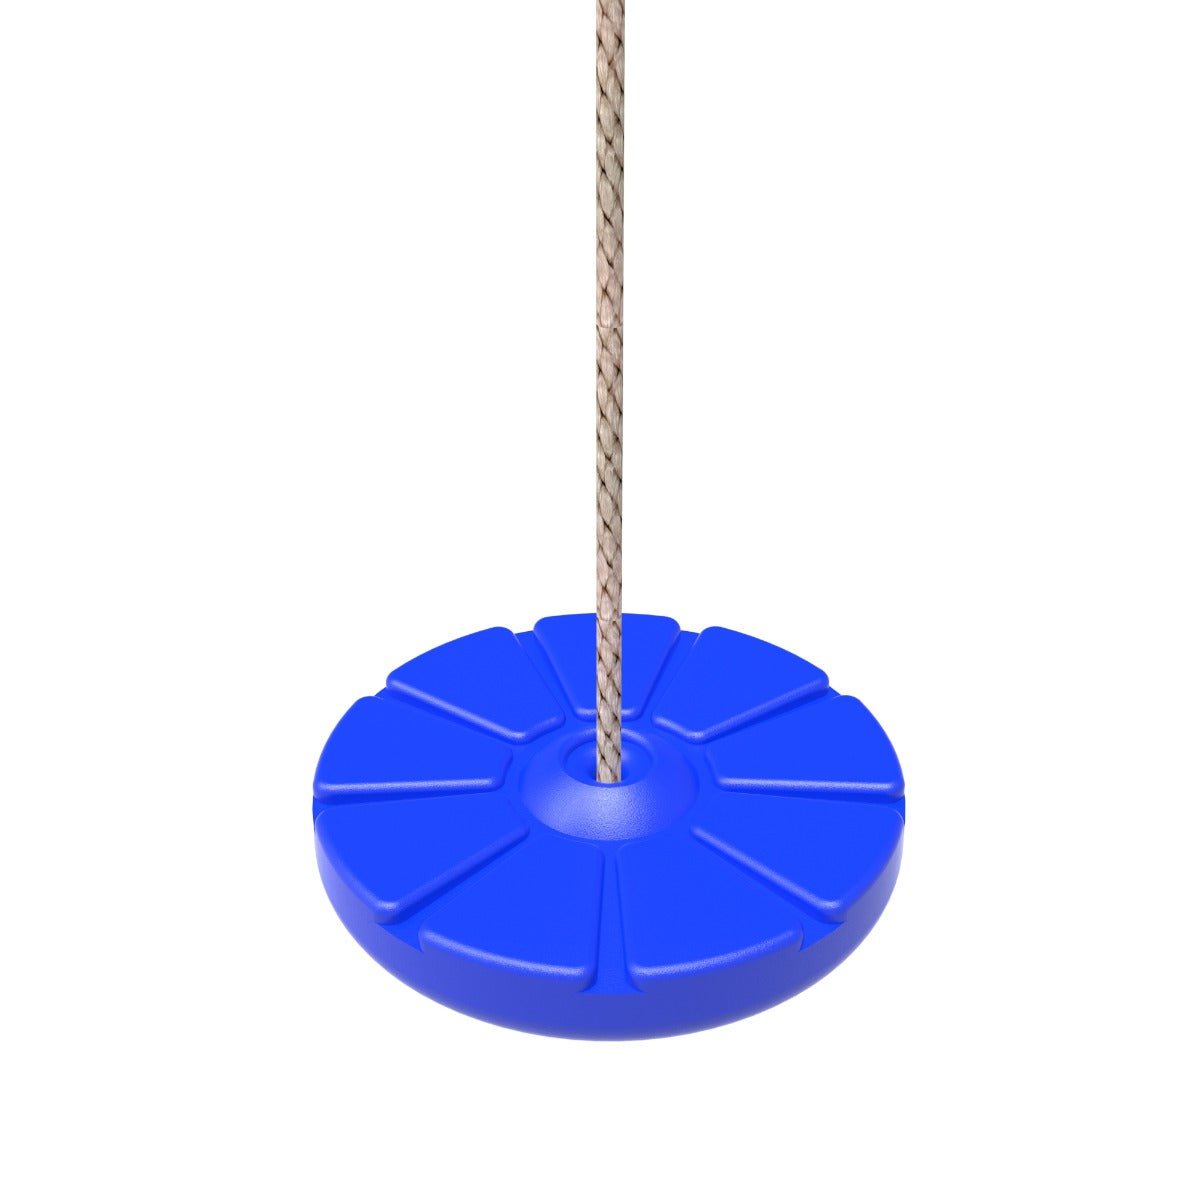 Rebo Button Swing Seat - Blue